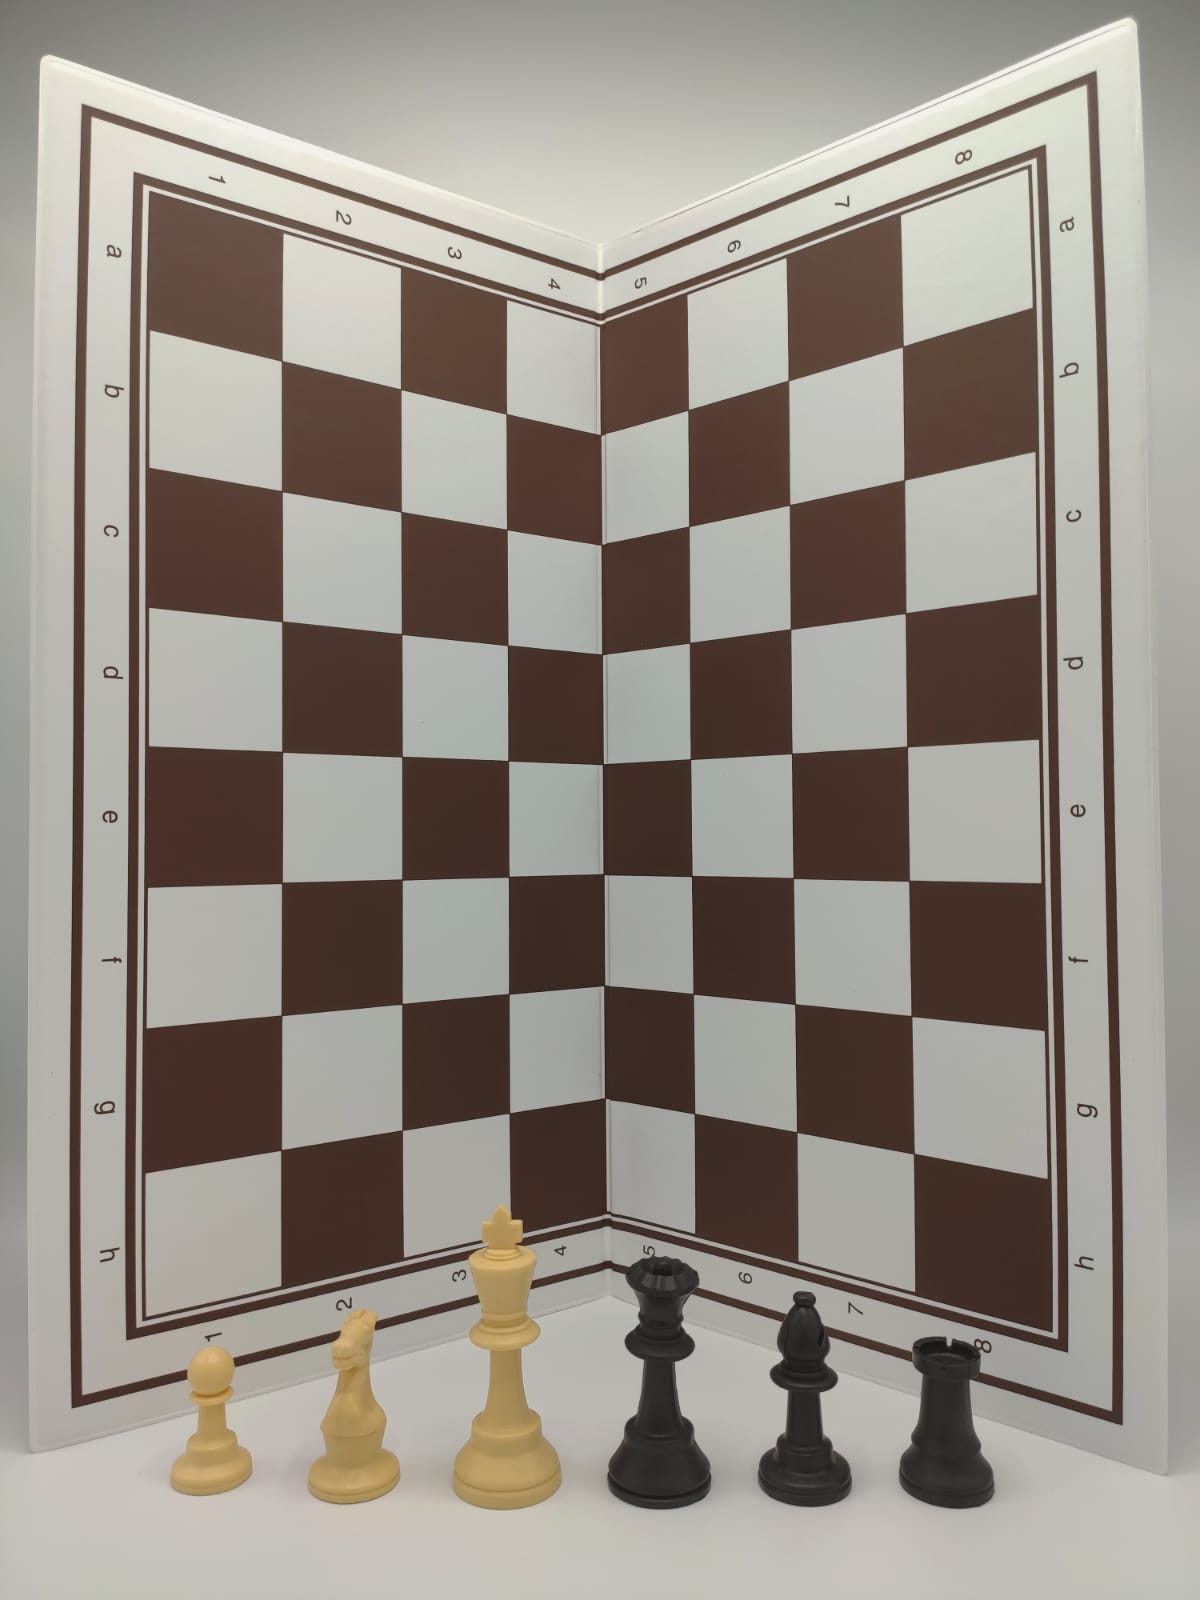 Complete schaakset voor beginners